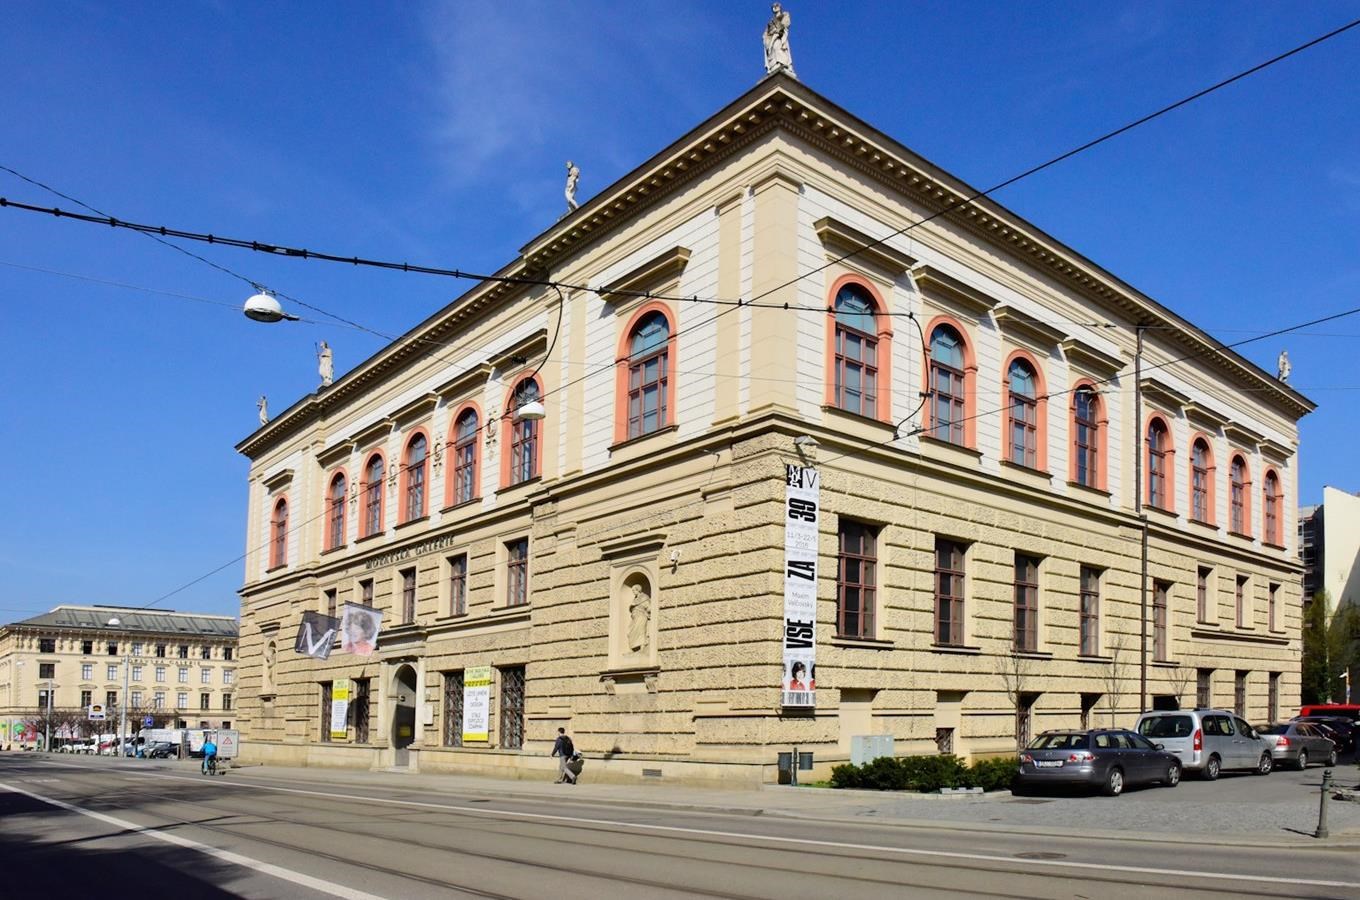 Moravská galerie v Brně - druhé největší muzeum umění v České republice